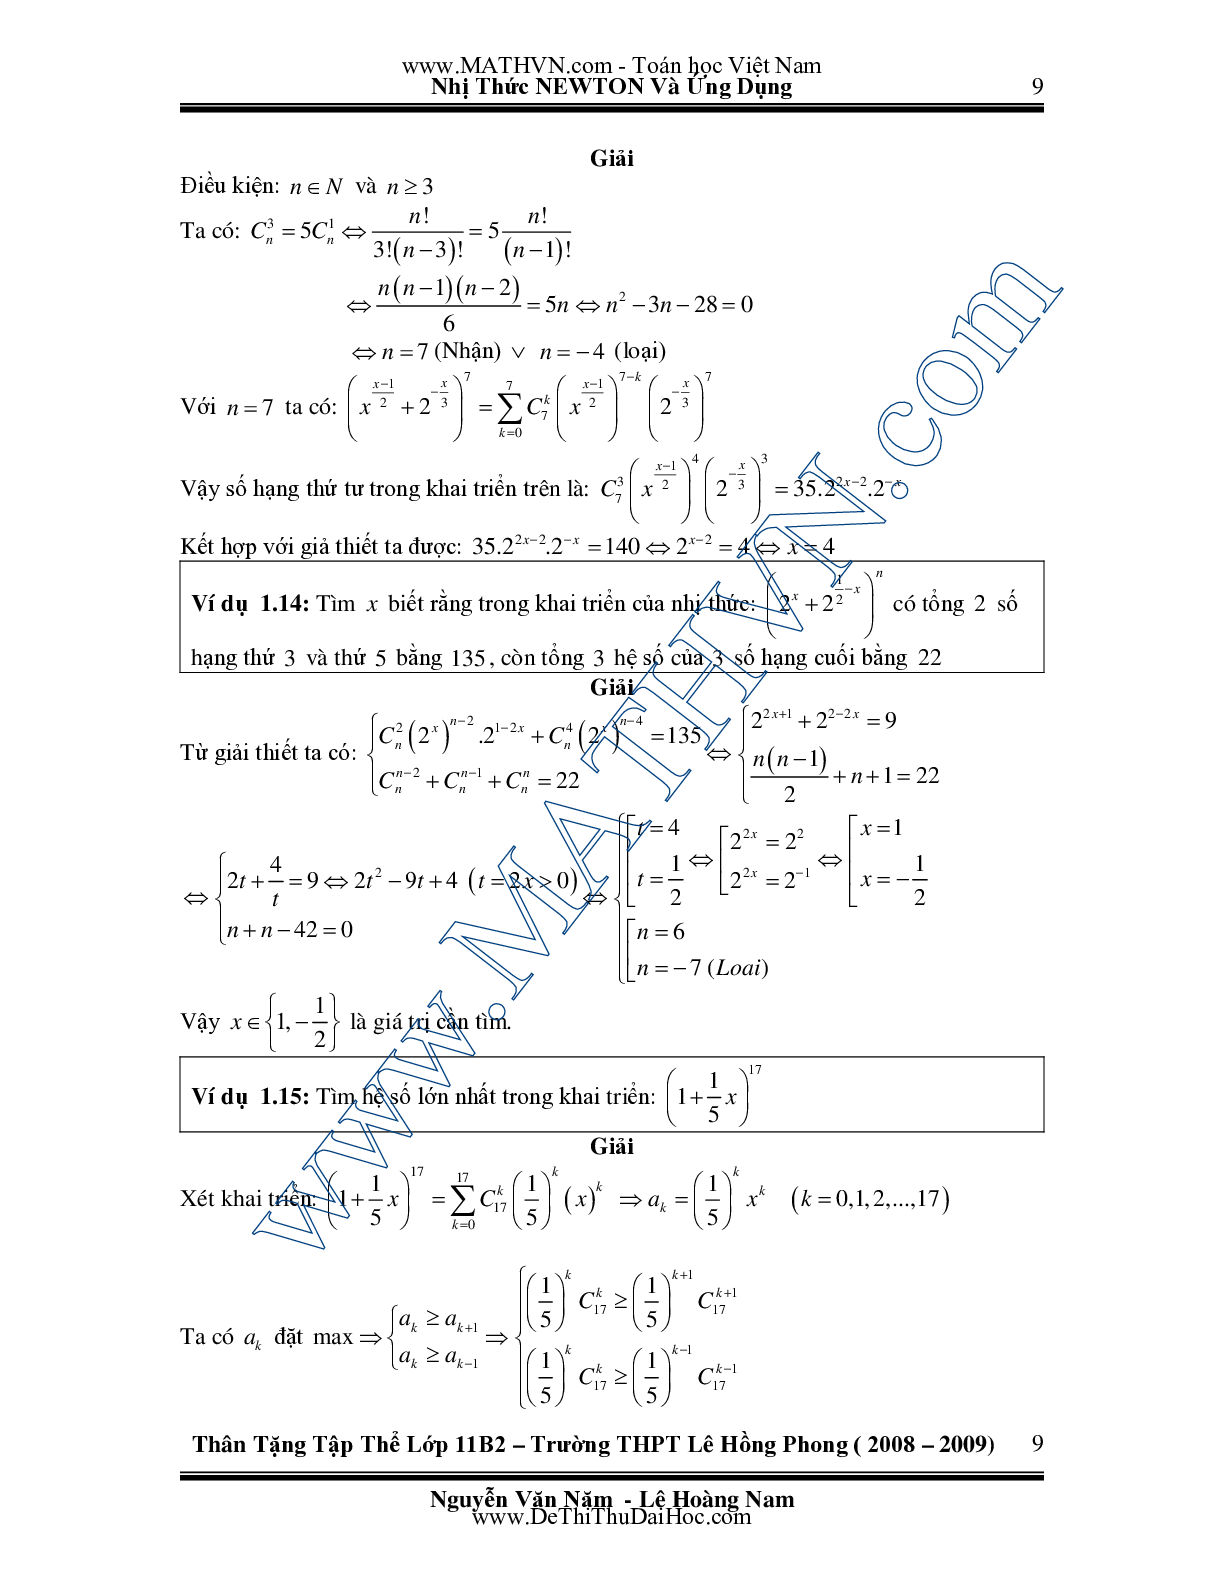 Chuyên đề Nhị thức Newton và ứng dụng môn Toán lớp 11 (trang 9)